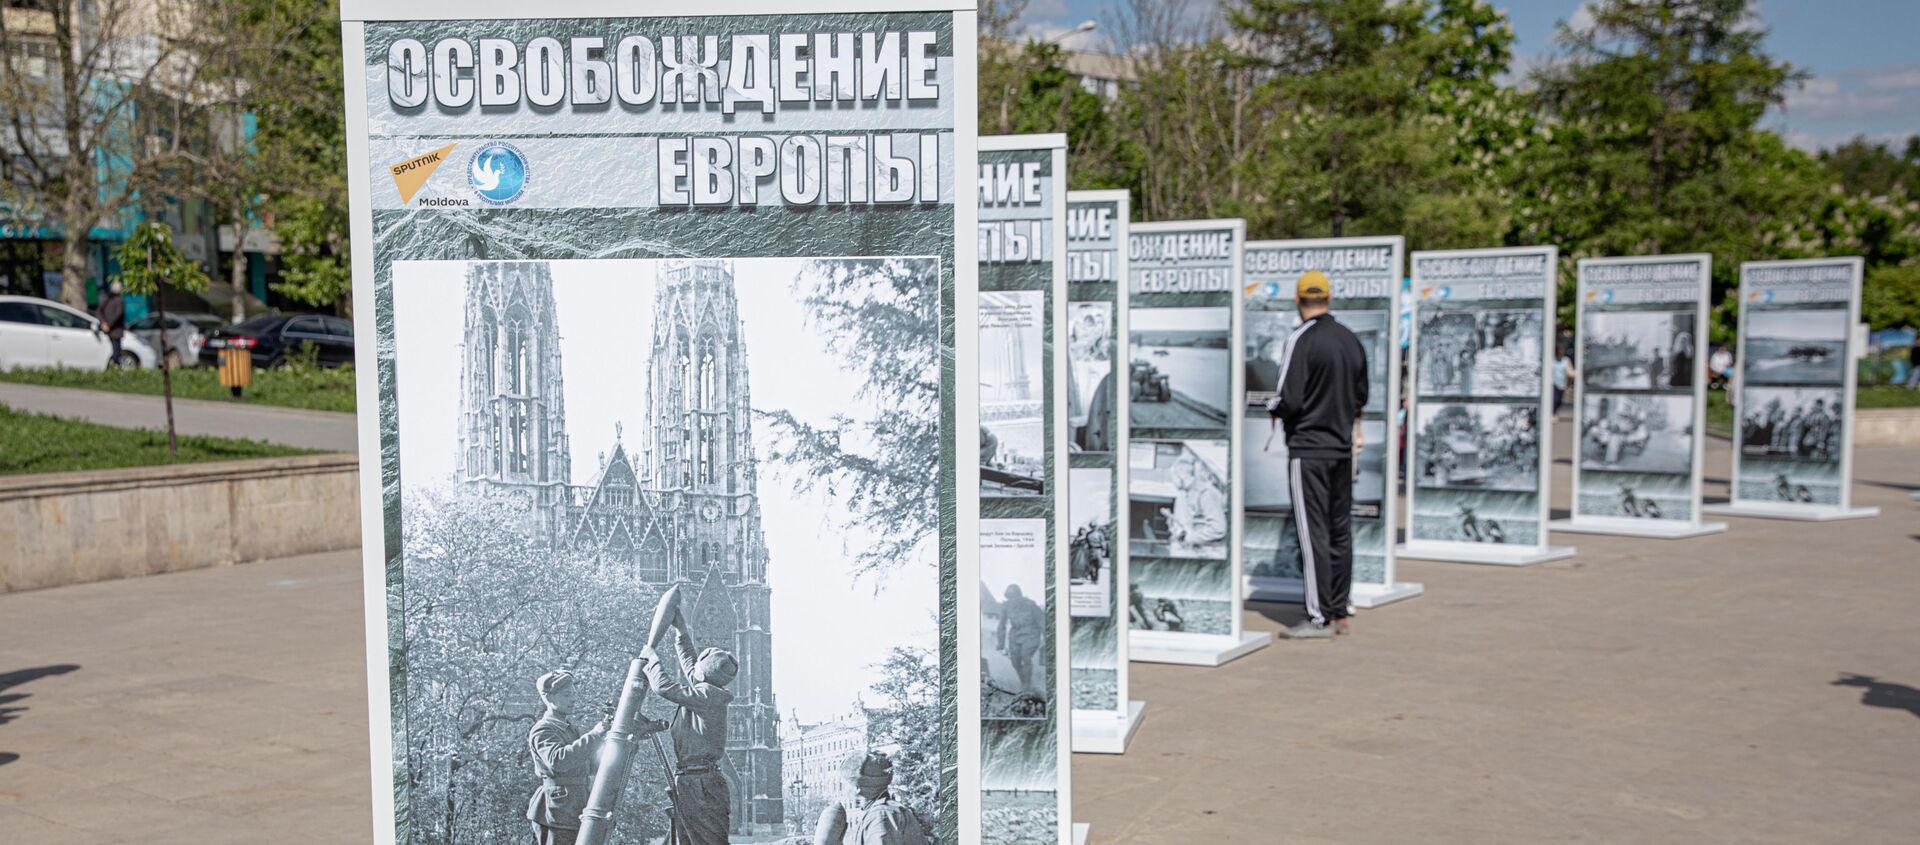 Фотовыставка Освобождение Европы в Кишиневе - Sputnik Moldova, 1920, 09.05.2021